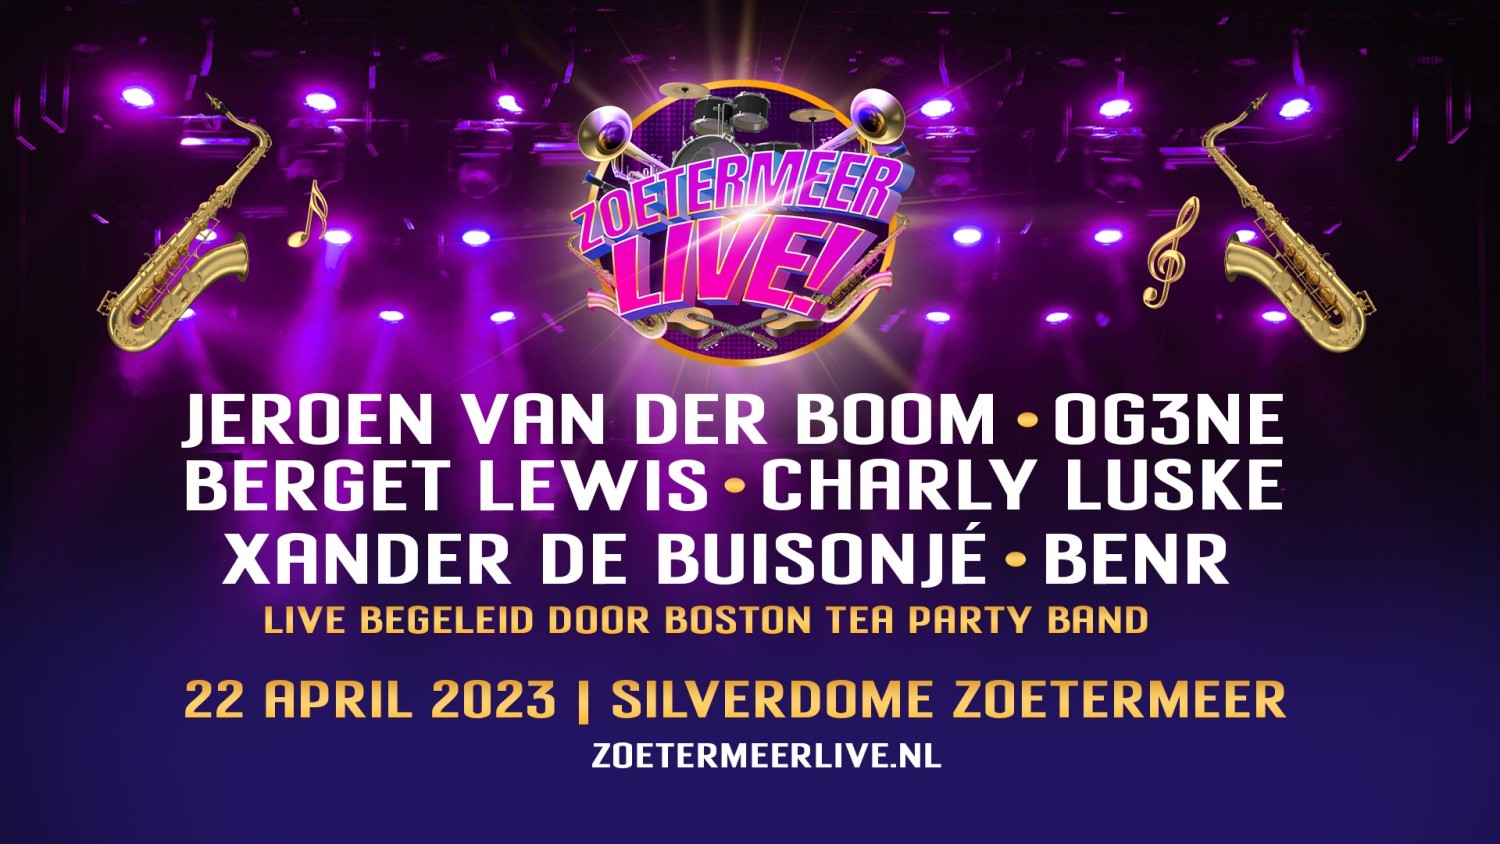 Party nieuws: Zoetermeer Live! op zaterdag 22 april in de Silverdome